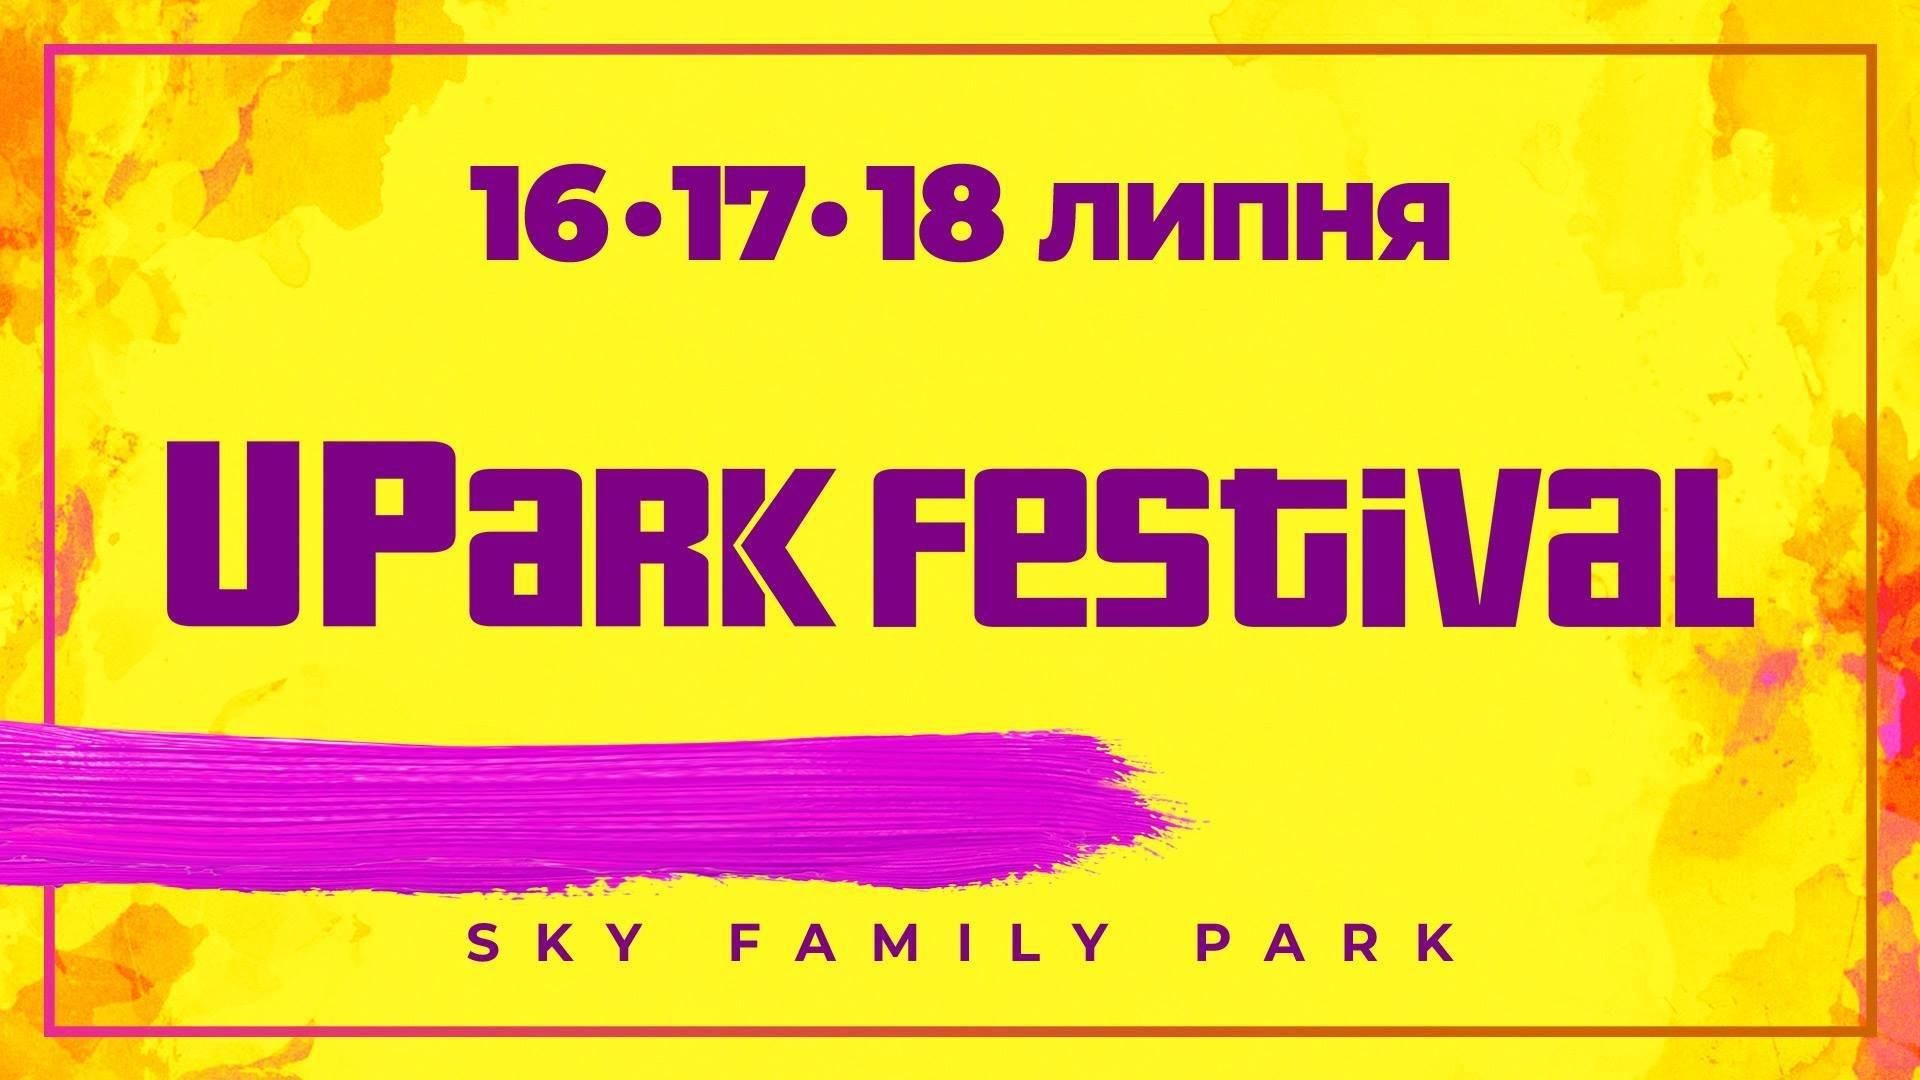 UPark Festival 2019 Київ – розклад на всі дні, учасники, ціни на квитки